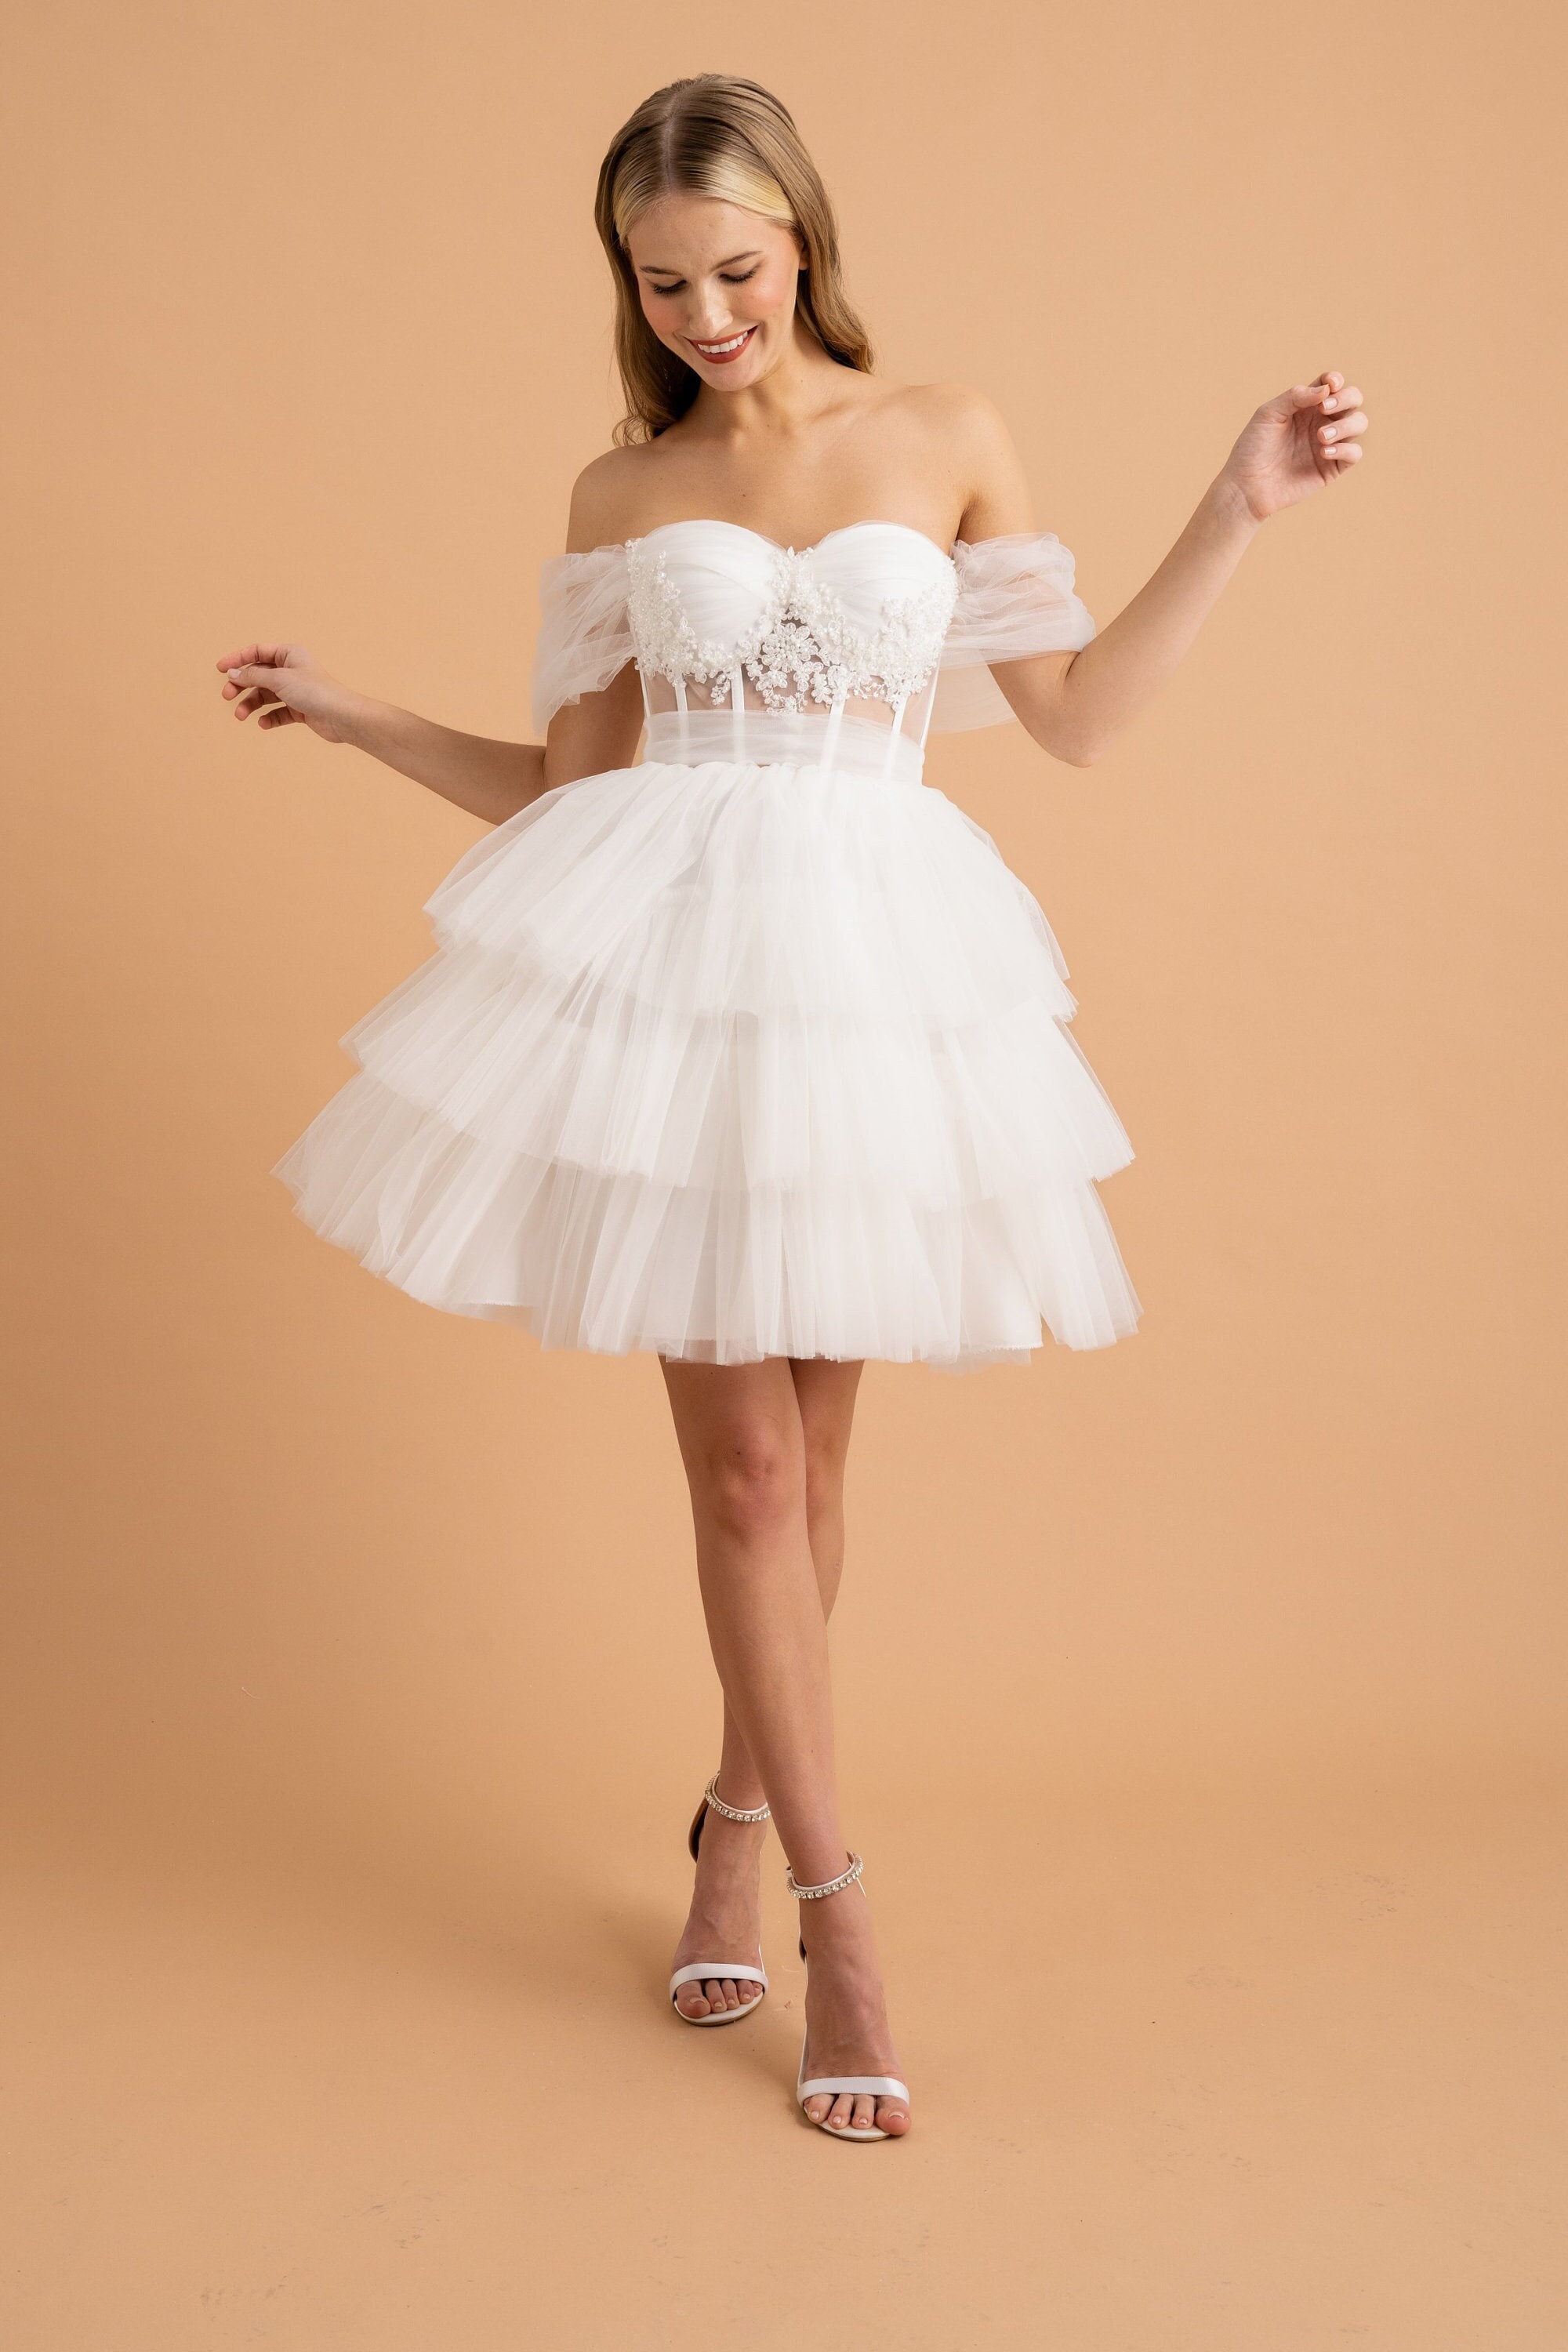 Mini Corset White Tulle Wedding Dress Engagement Photoshoot